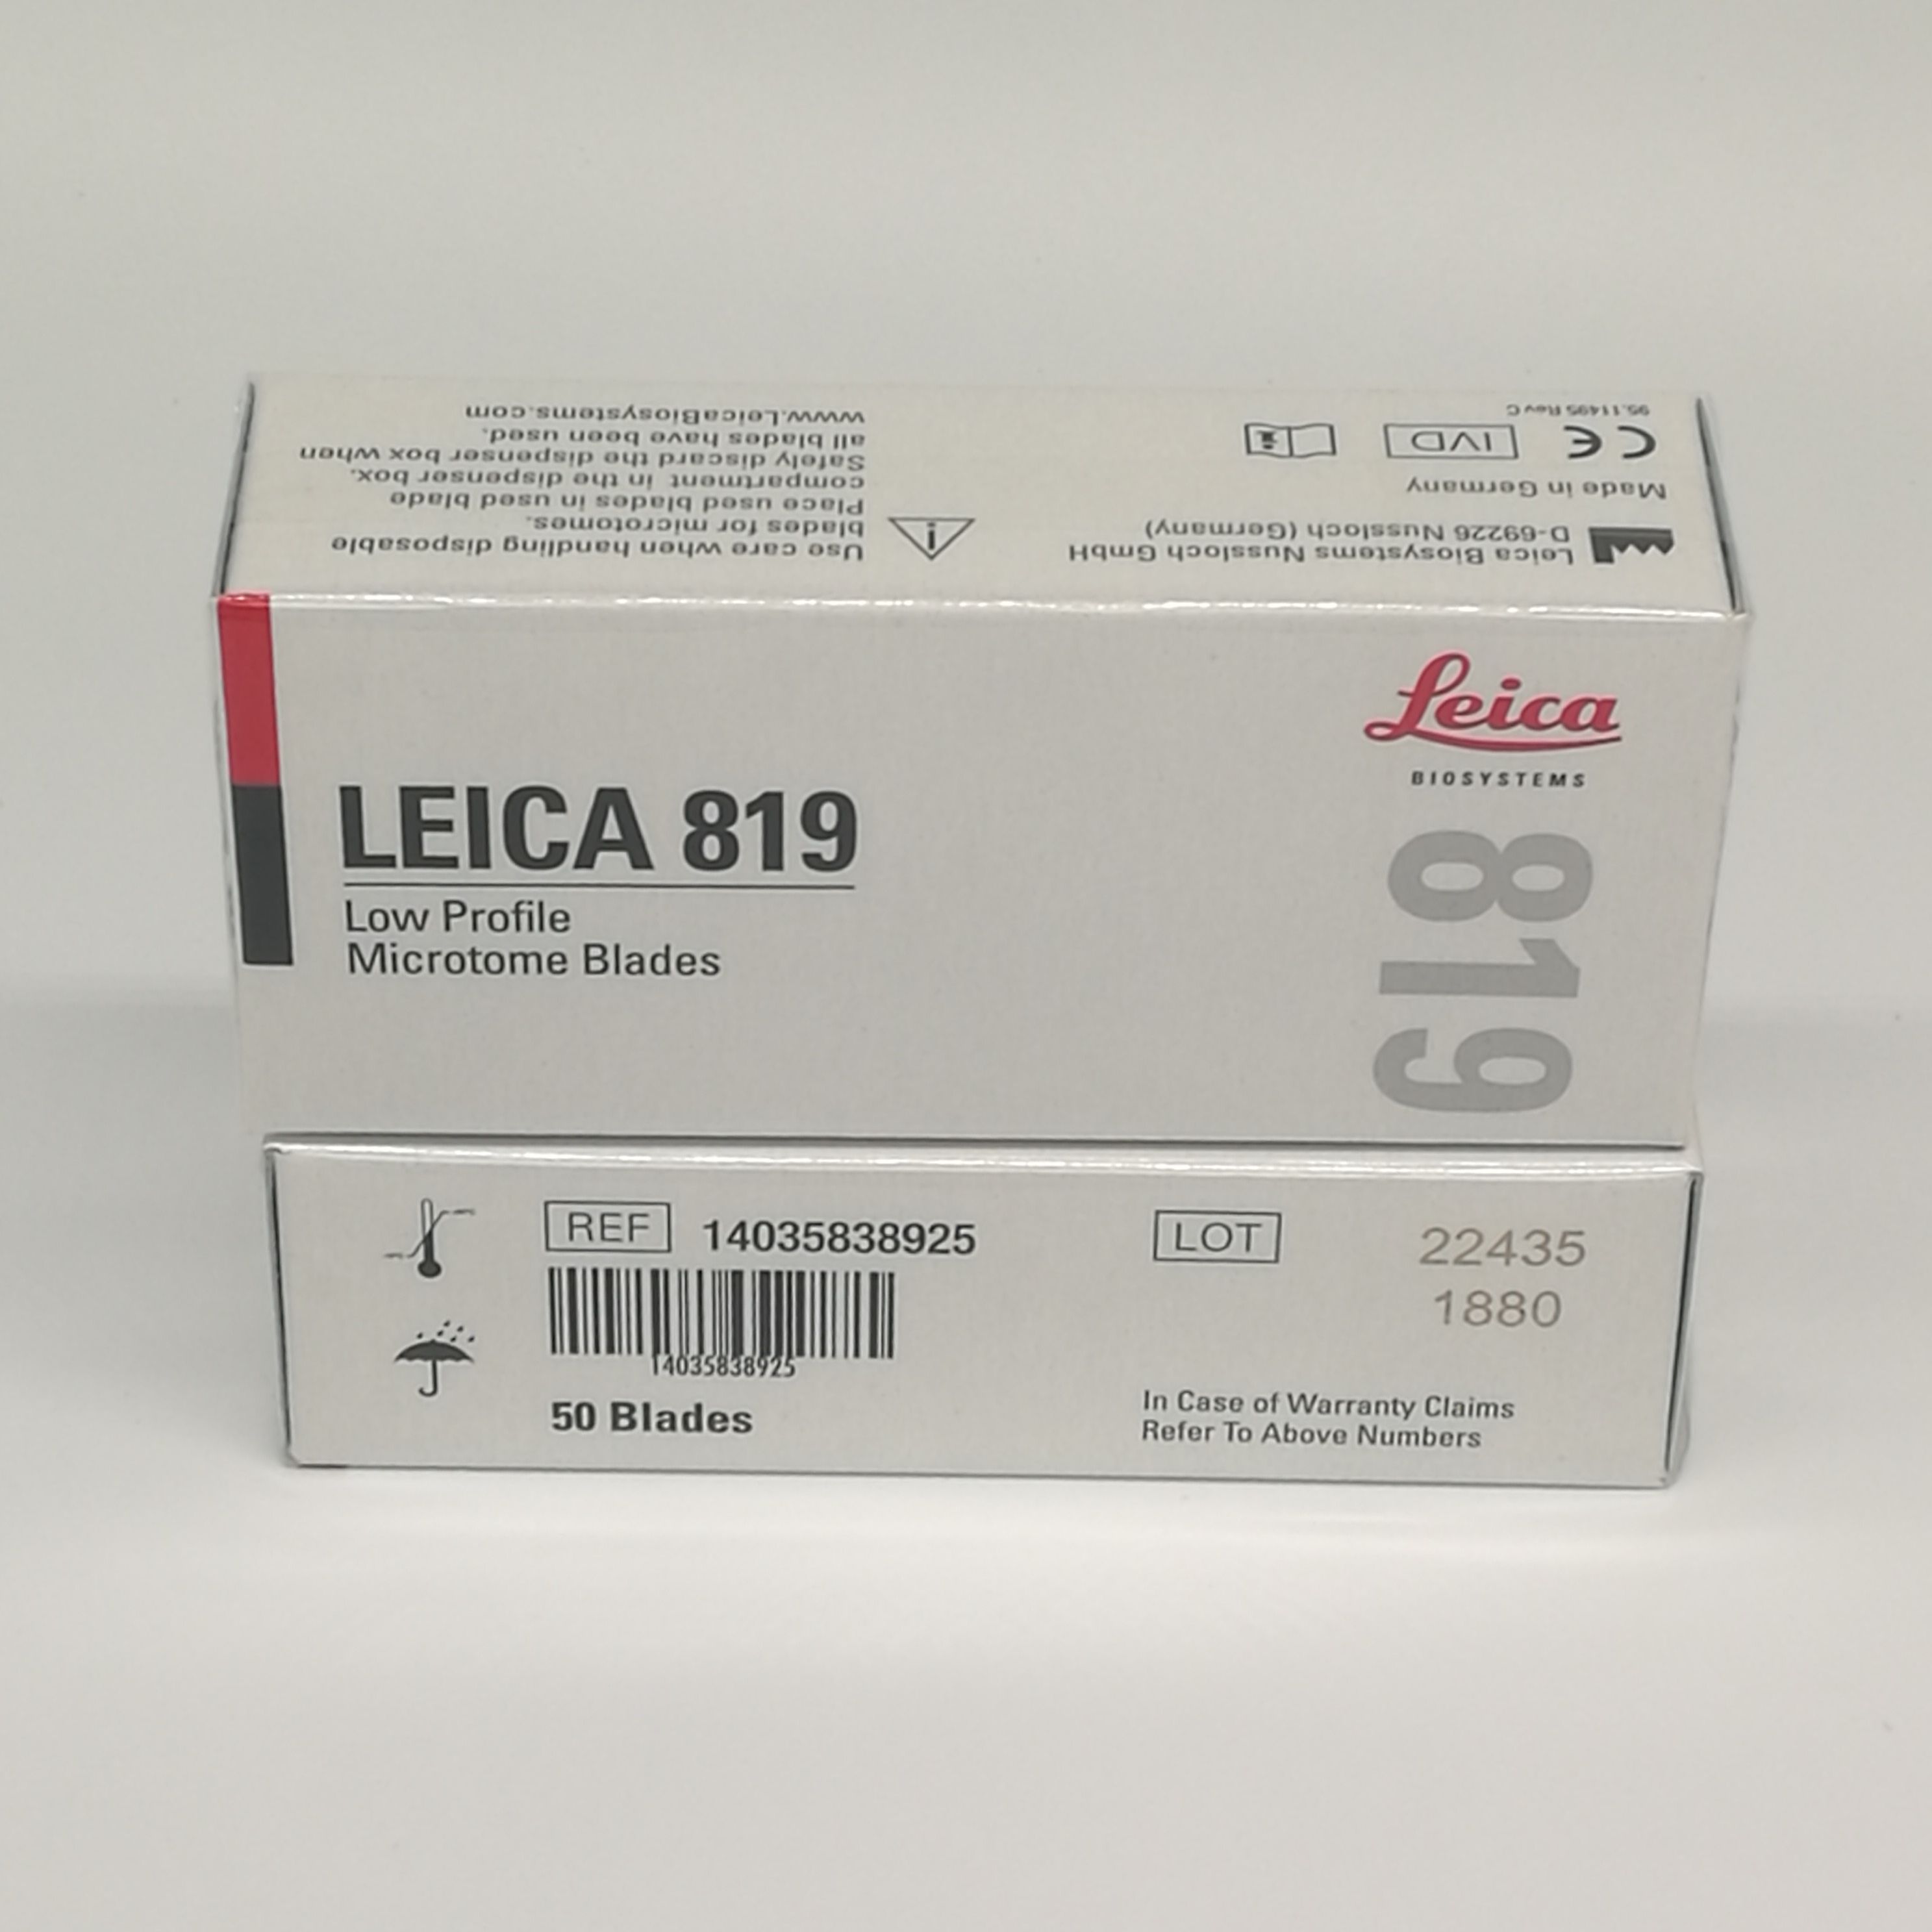 819病理刀片 Leica 14035838925